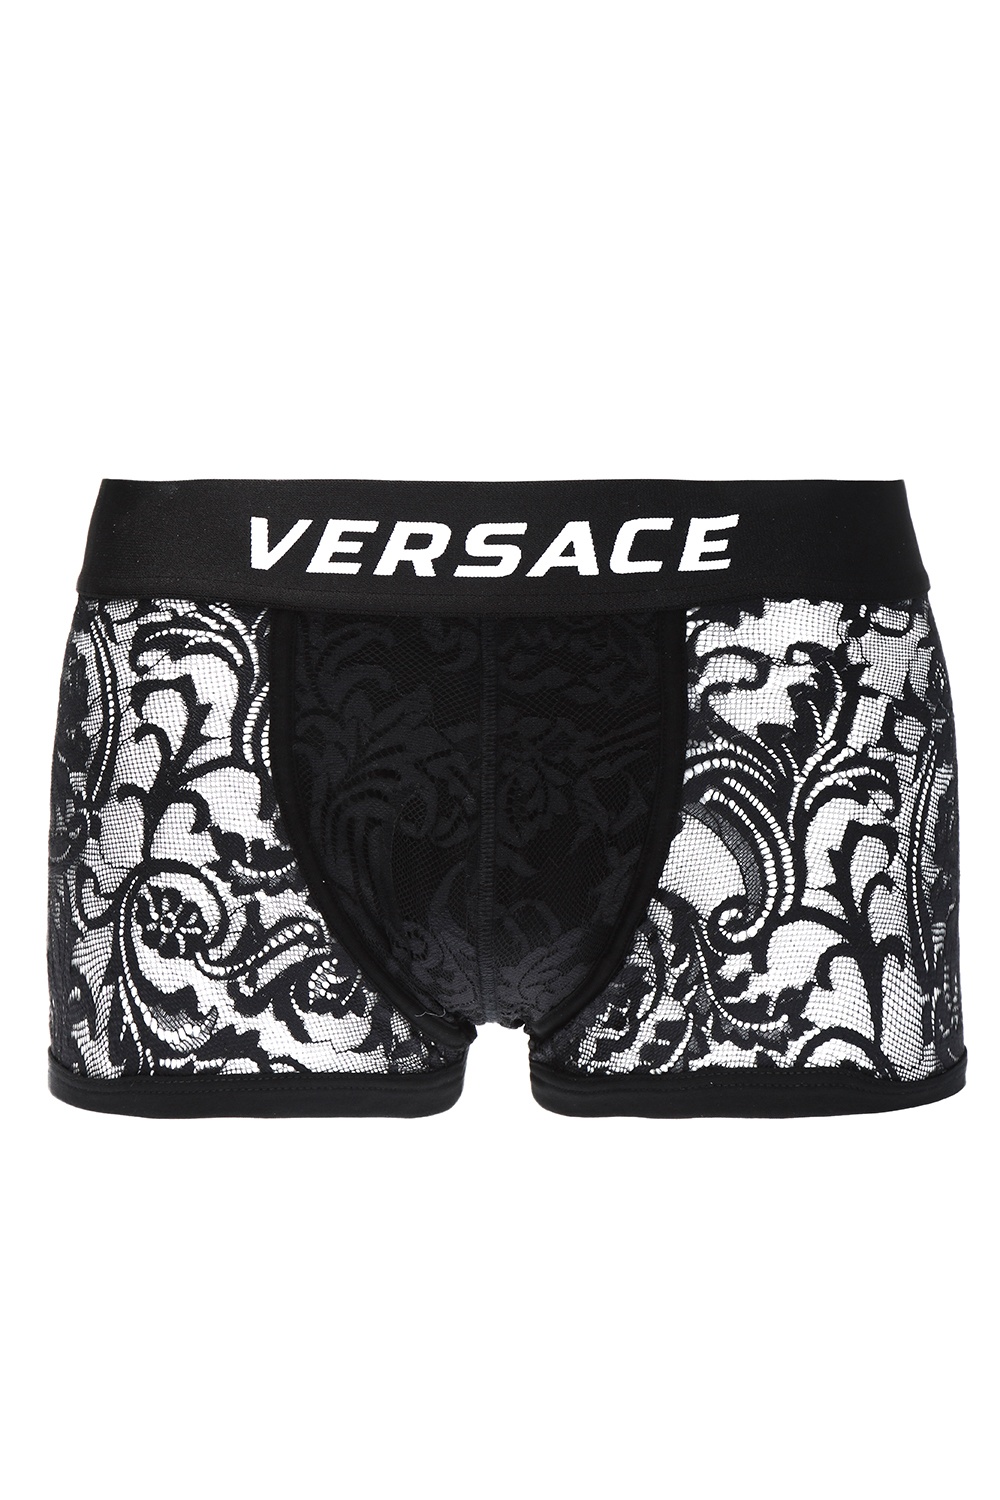 versace logo lace boxers